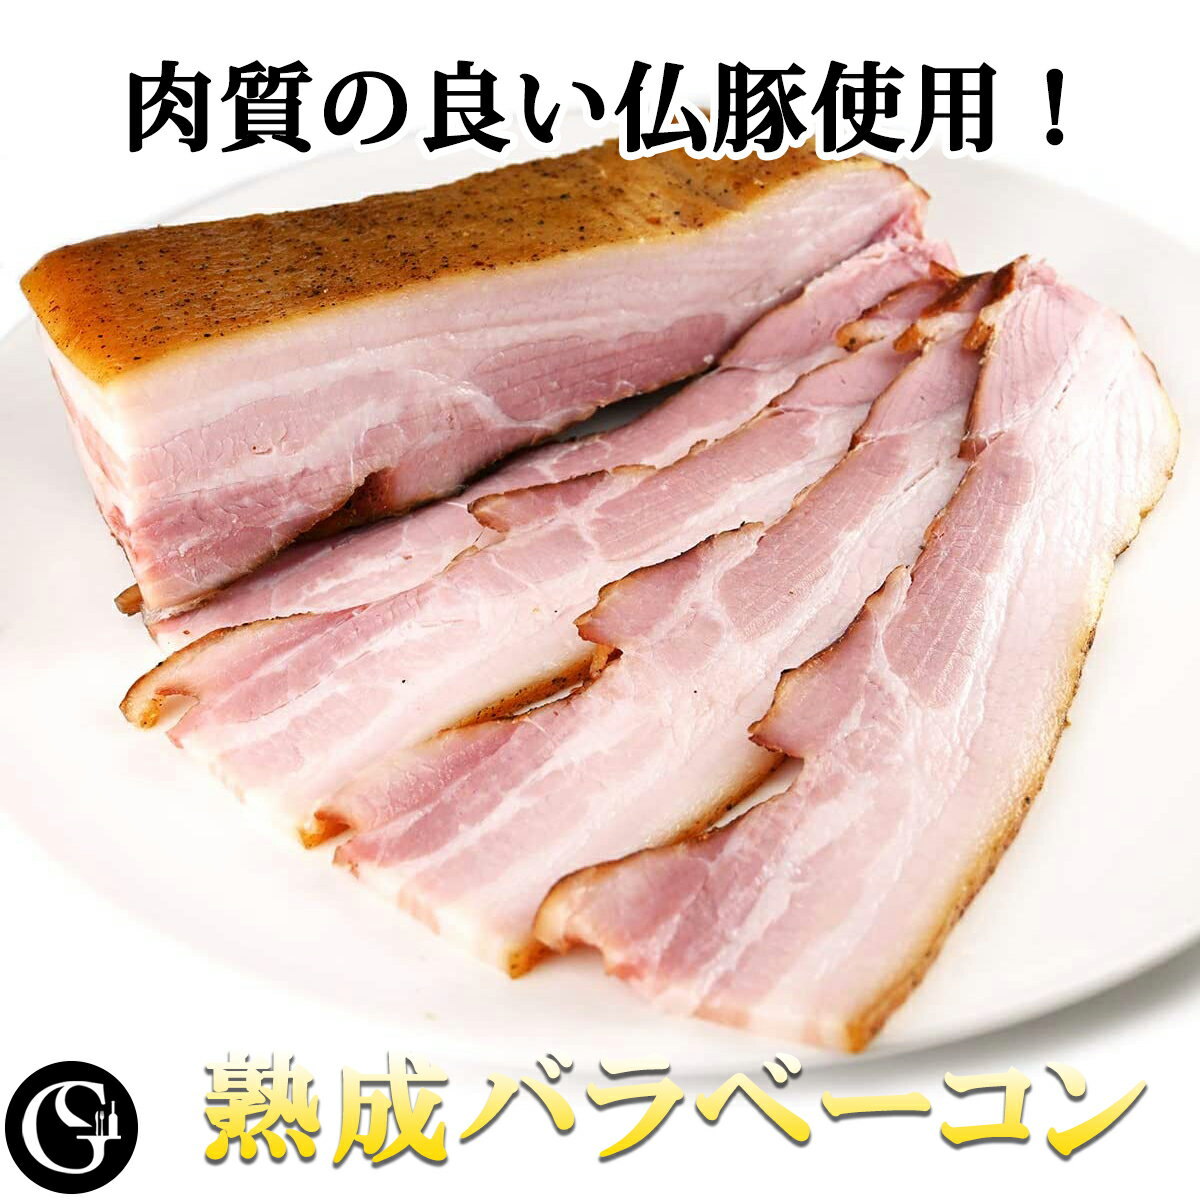 熟成バラベーコン 300g 肉質の良いフランス産豚バラ肉 使用 熟成ベーコン ブロック 朝食 ベーコンエッグ カルボナーラ【冷凍】